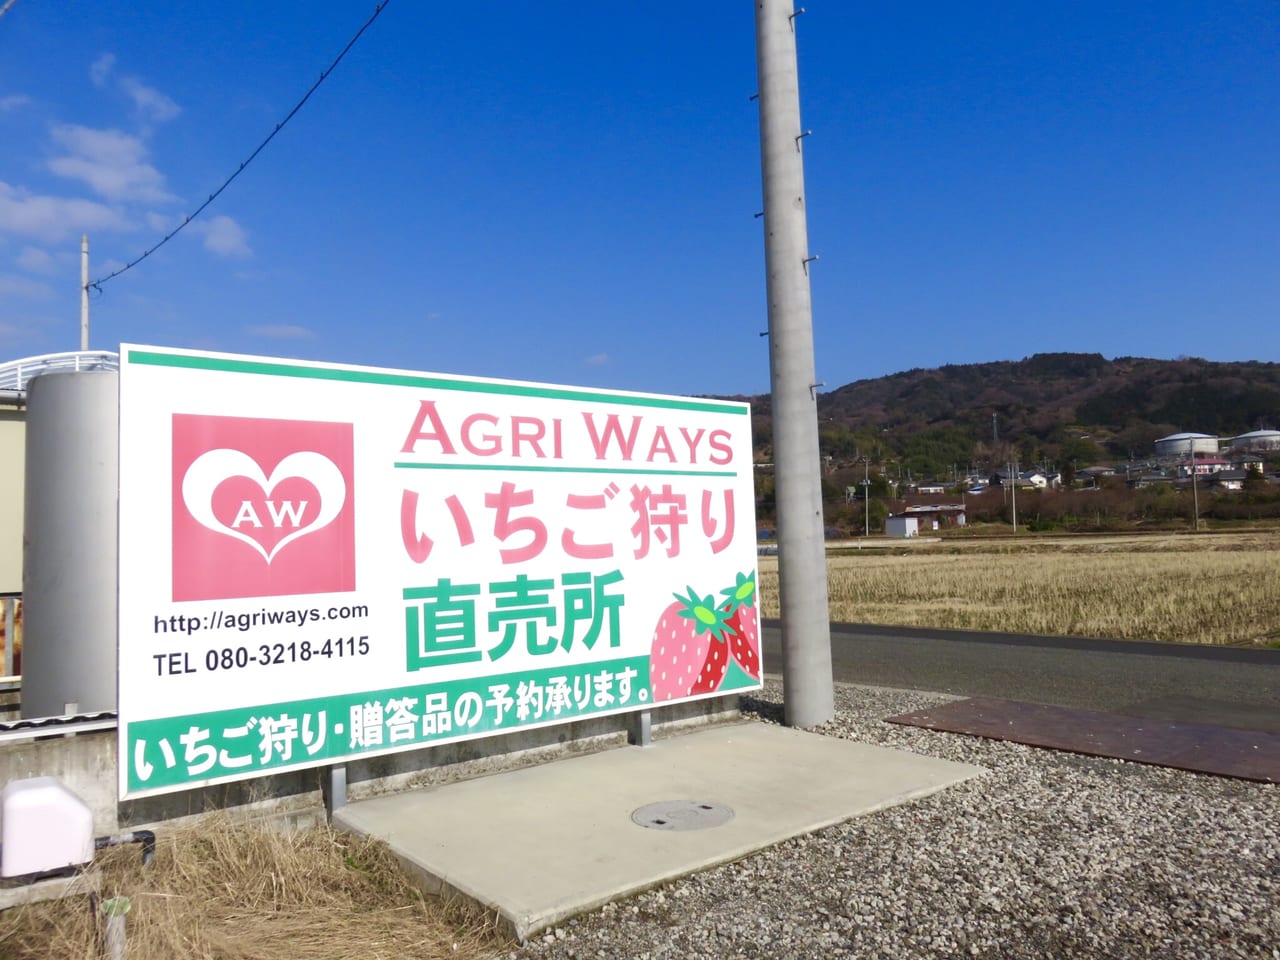 小田原市 富士山の見えるいちご農園 Agri Ways のいちご狩りが1 11 オープンしました 号外net 小田原市 県西地域